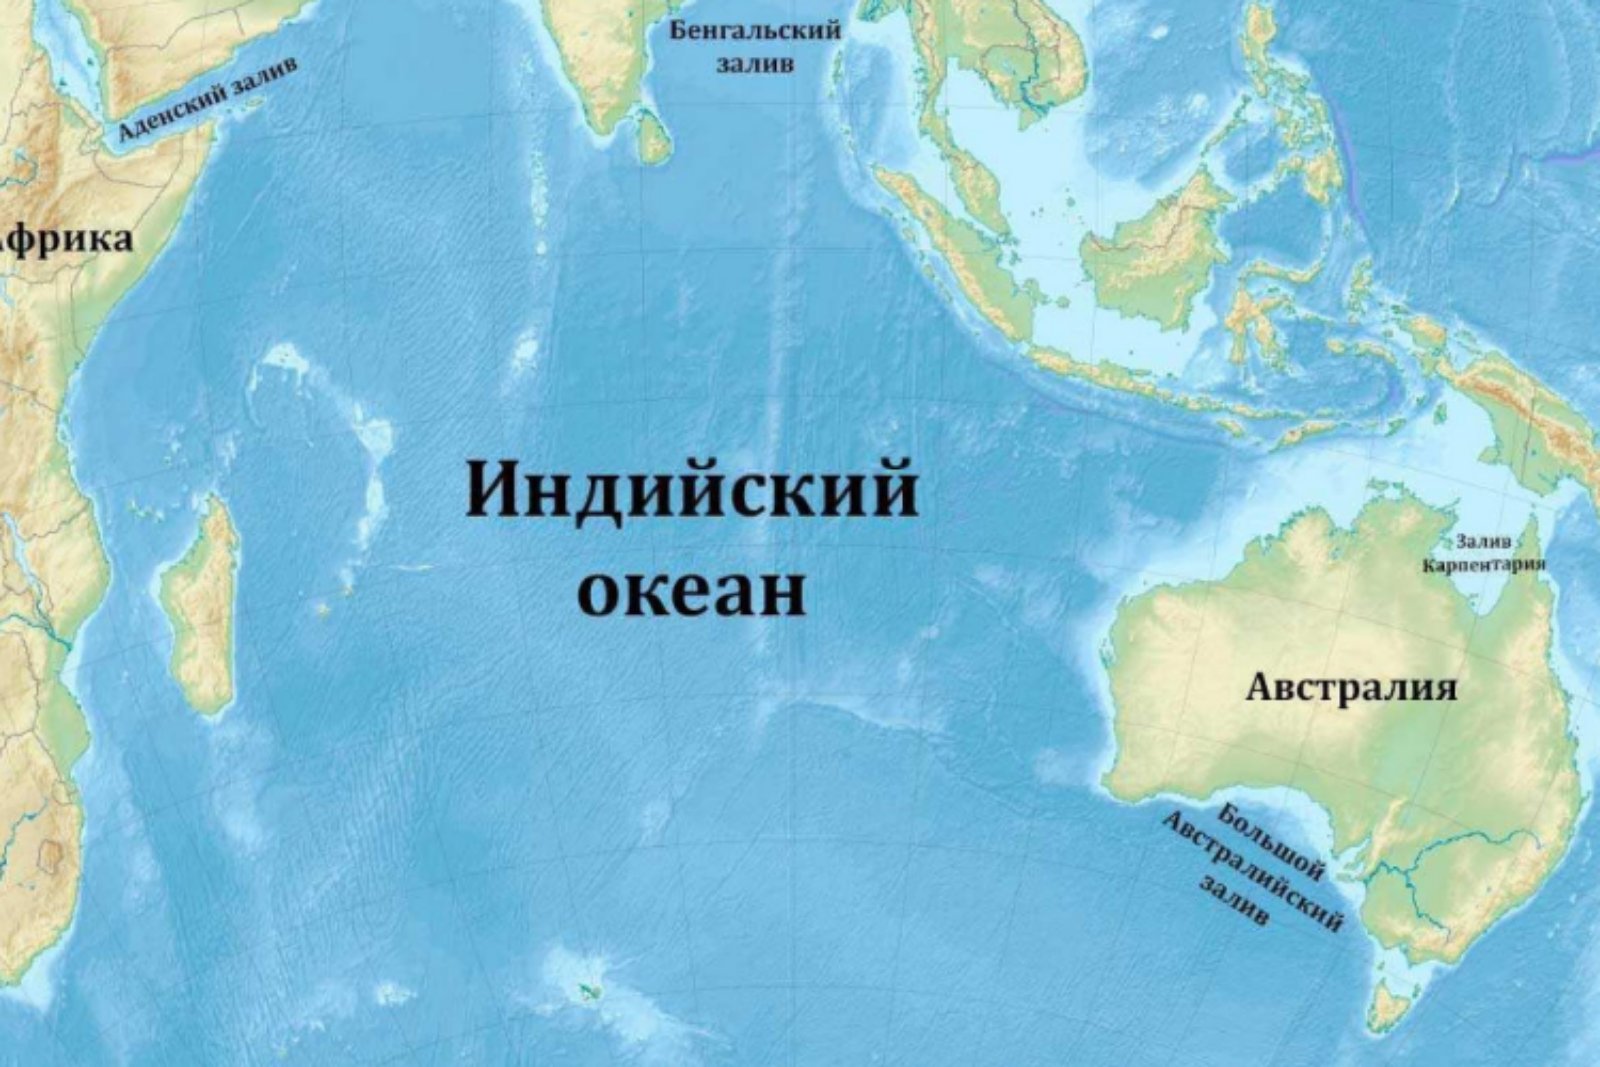 Большое море индийского океана. Оманский залив на карте индийского океана. Заливы и проливы индийского океана на карте. Индийский океан на карте. Кварта индийского океана.